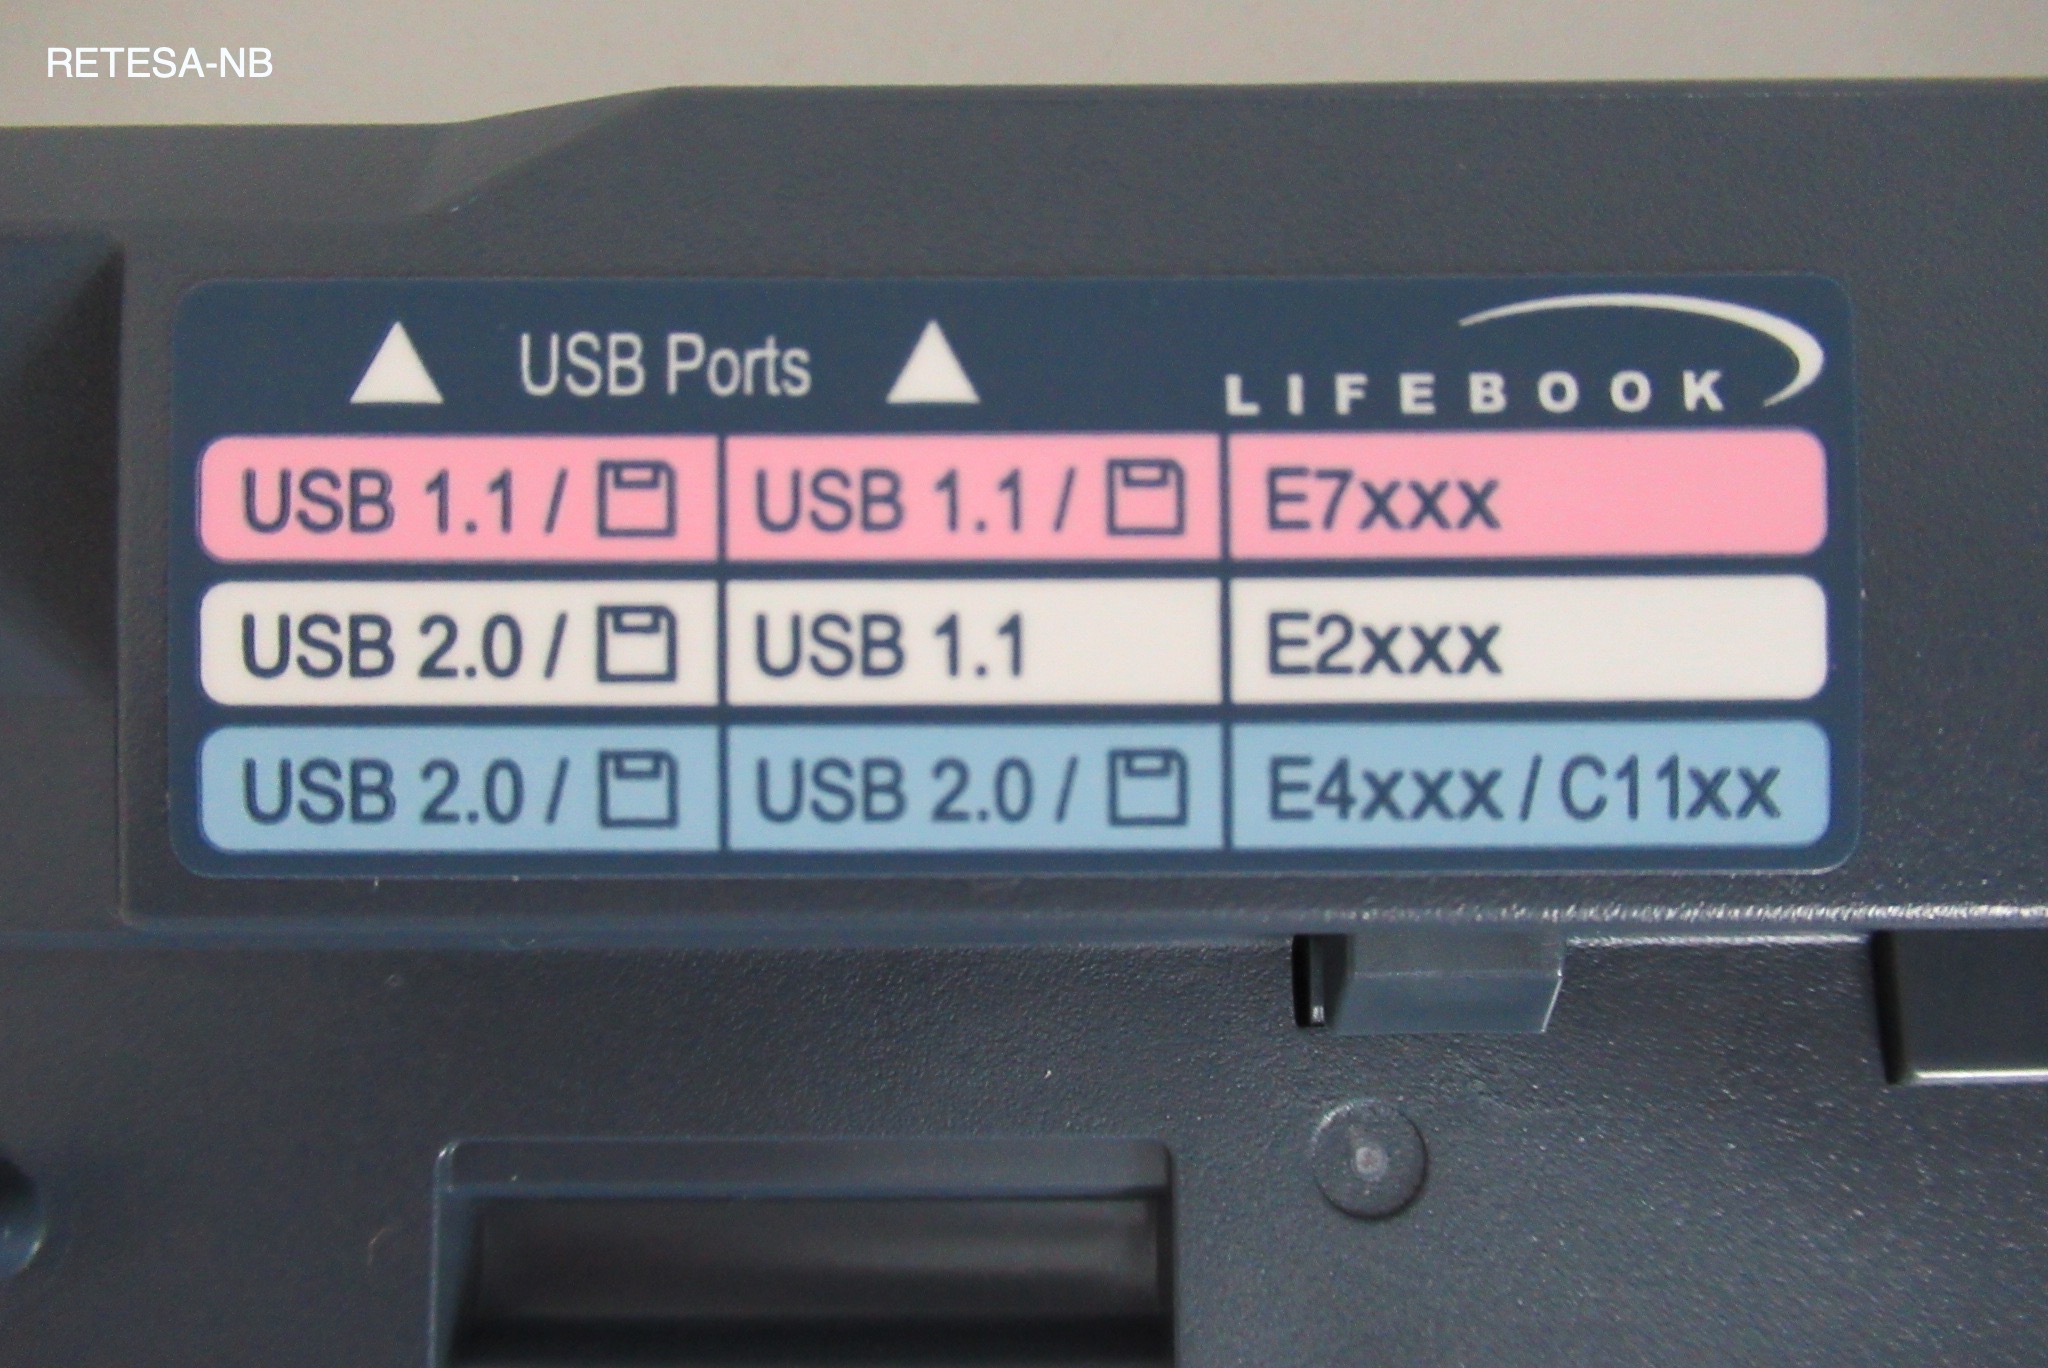 FSC Portreplikator für LifeBook C1110 FSC S26391-F2474-L940